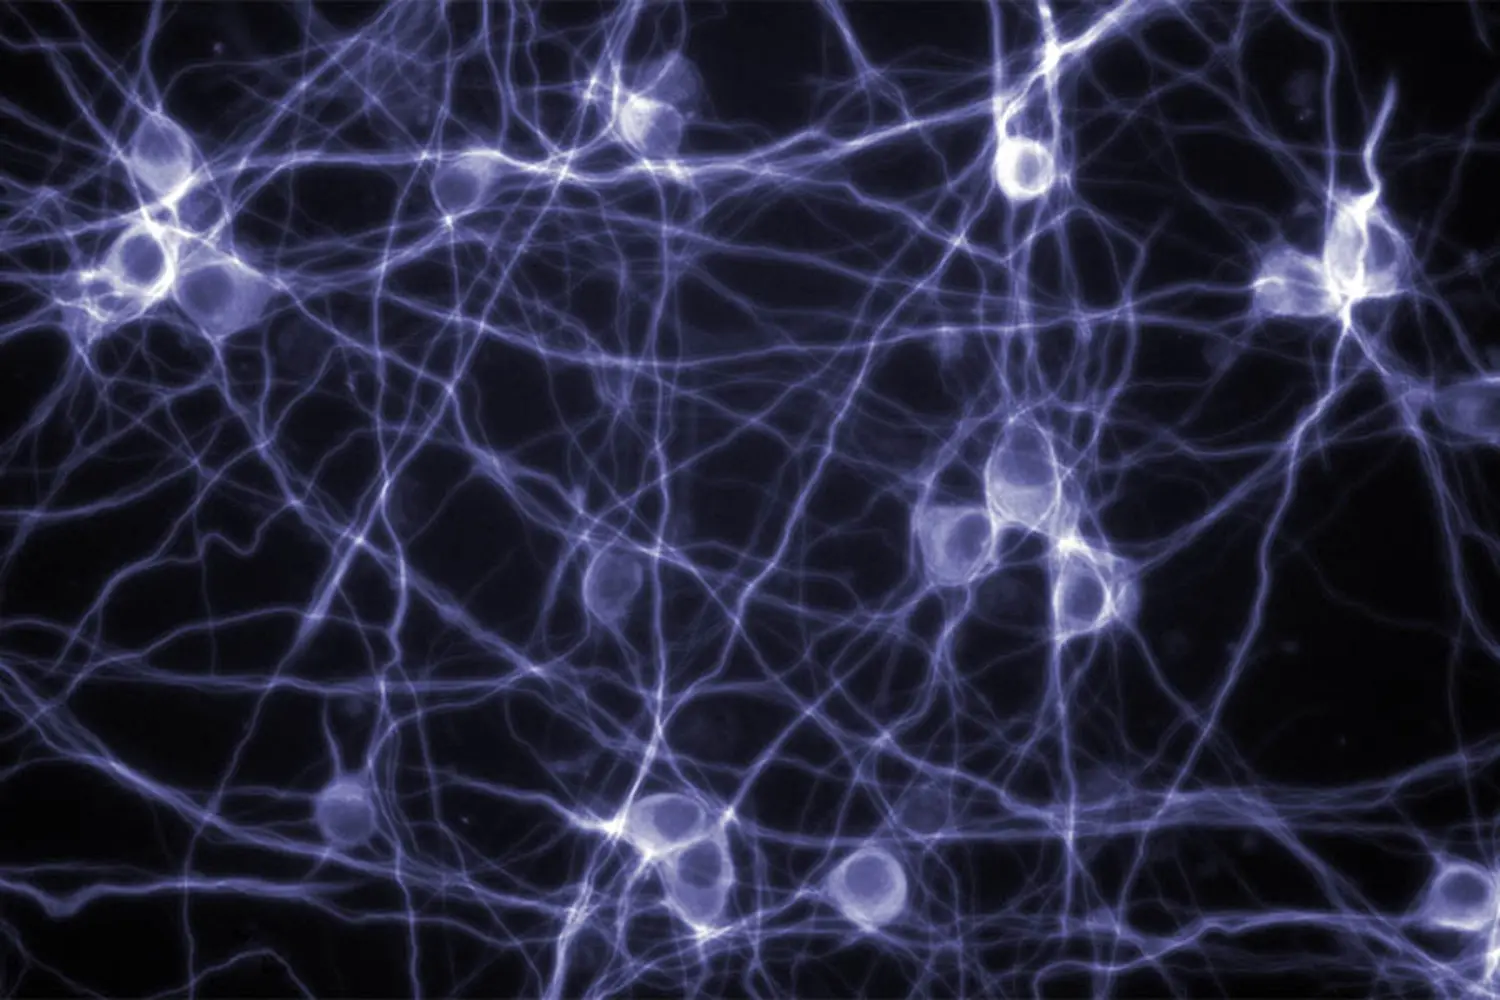 neuron-modeling-900x600-min.jpg